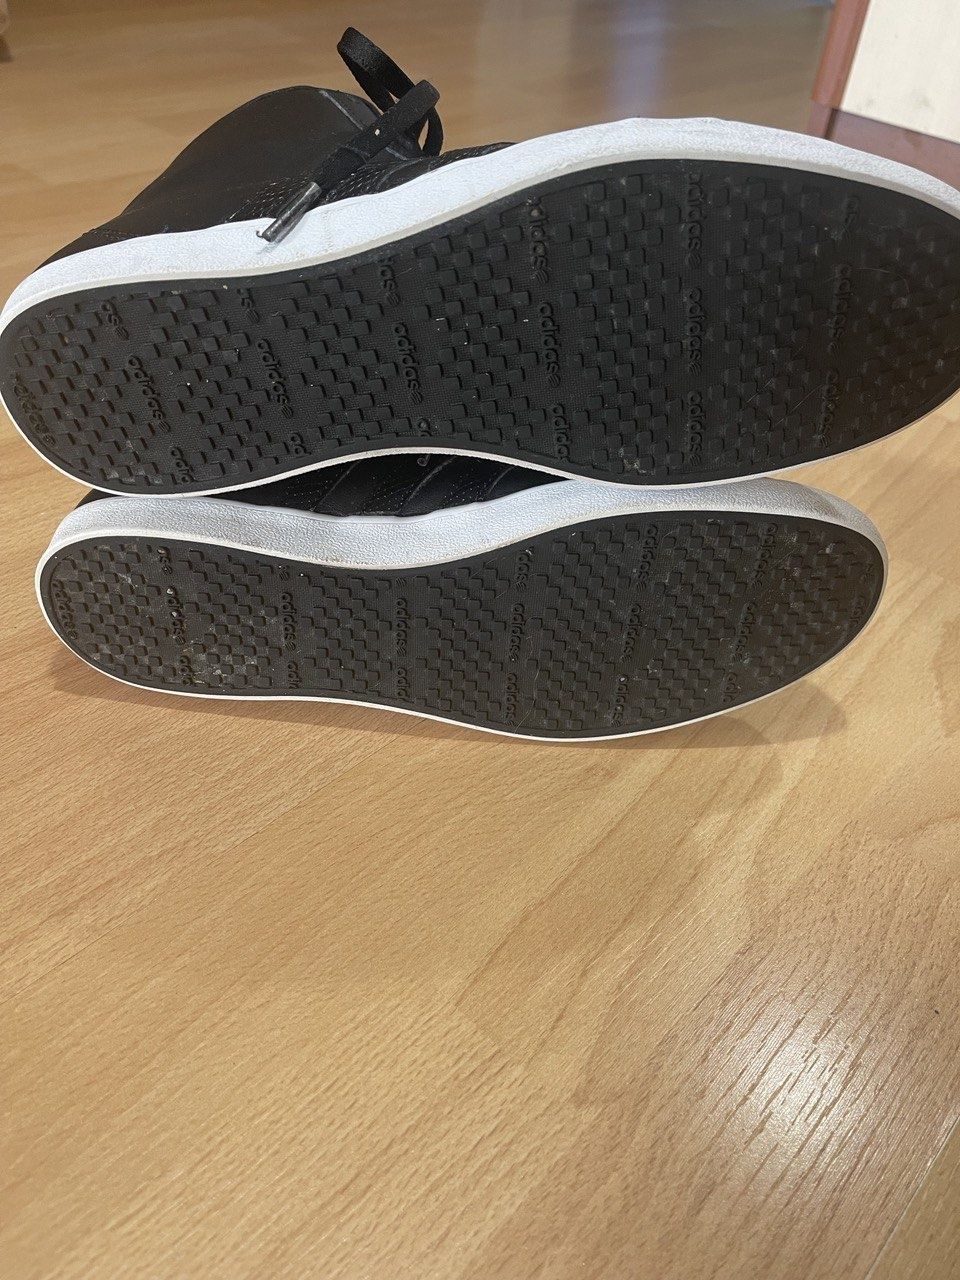 Кеды ботинки Adidas оригиналы 41 размер состояние новых